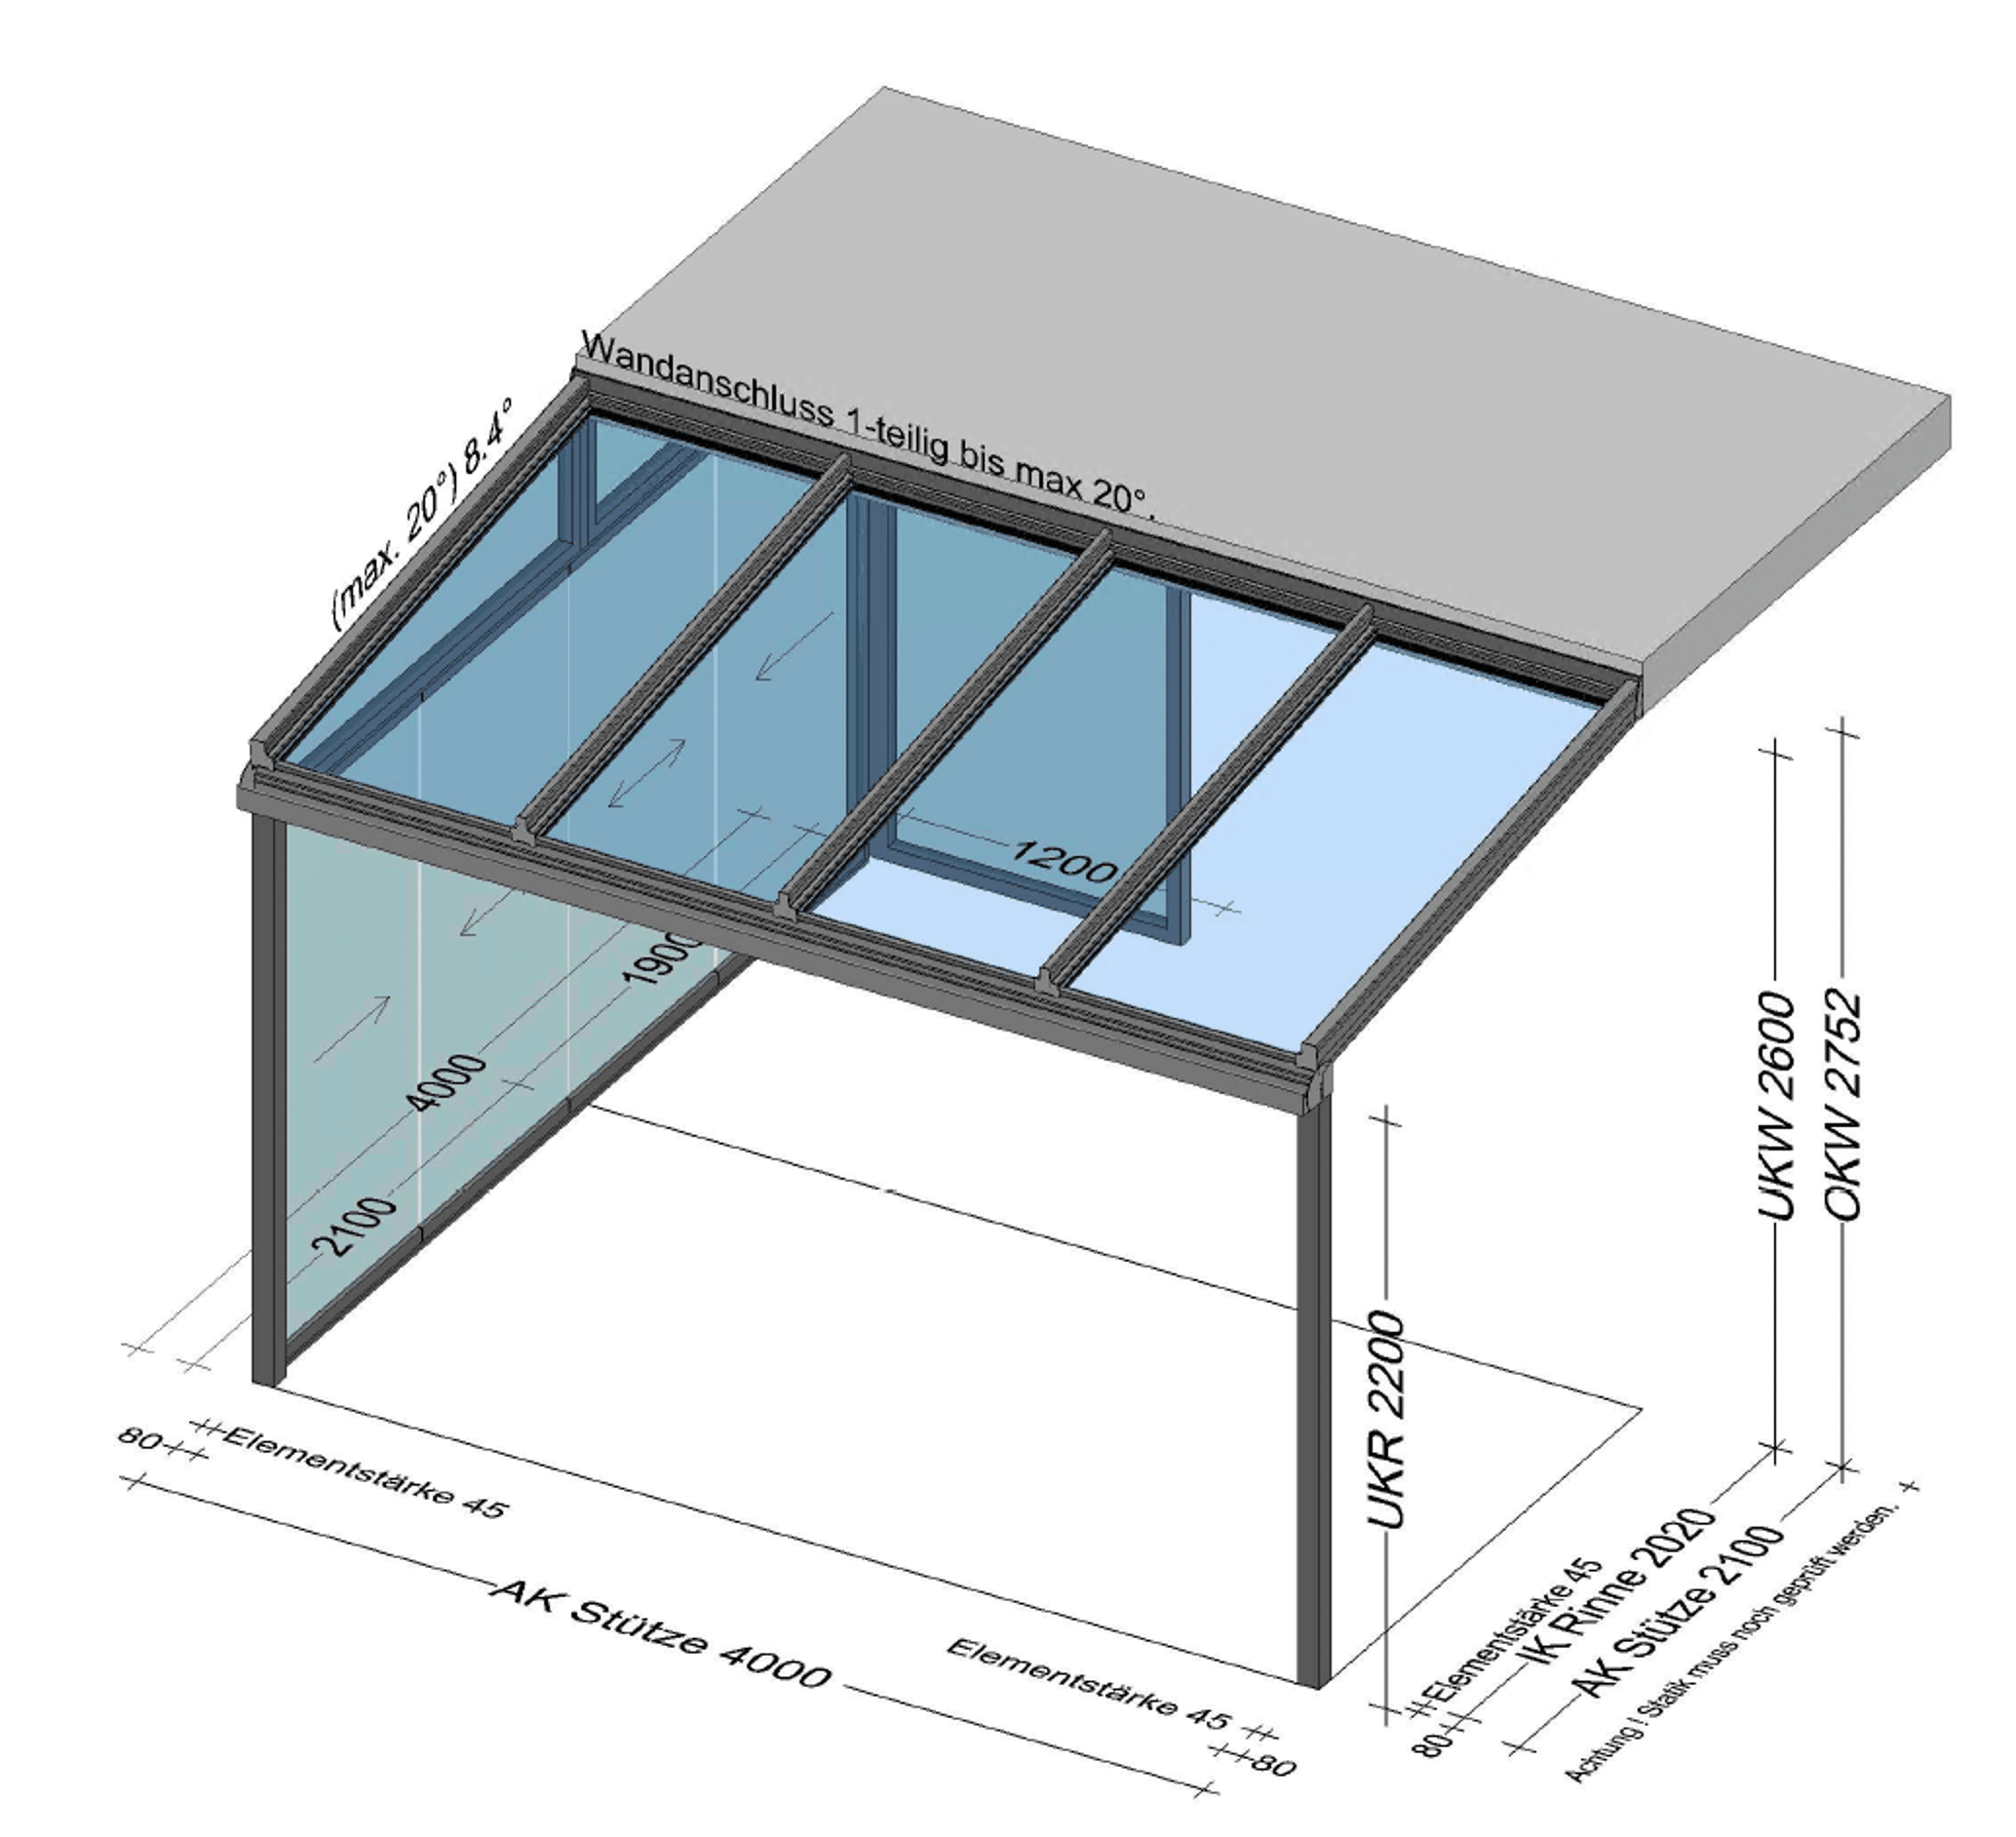 Terrassenüberdachung mit teilverglasten Seitenwänden - Preis